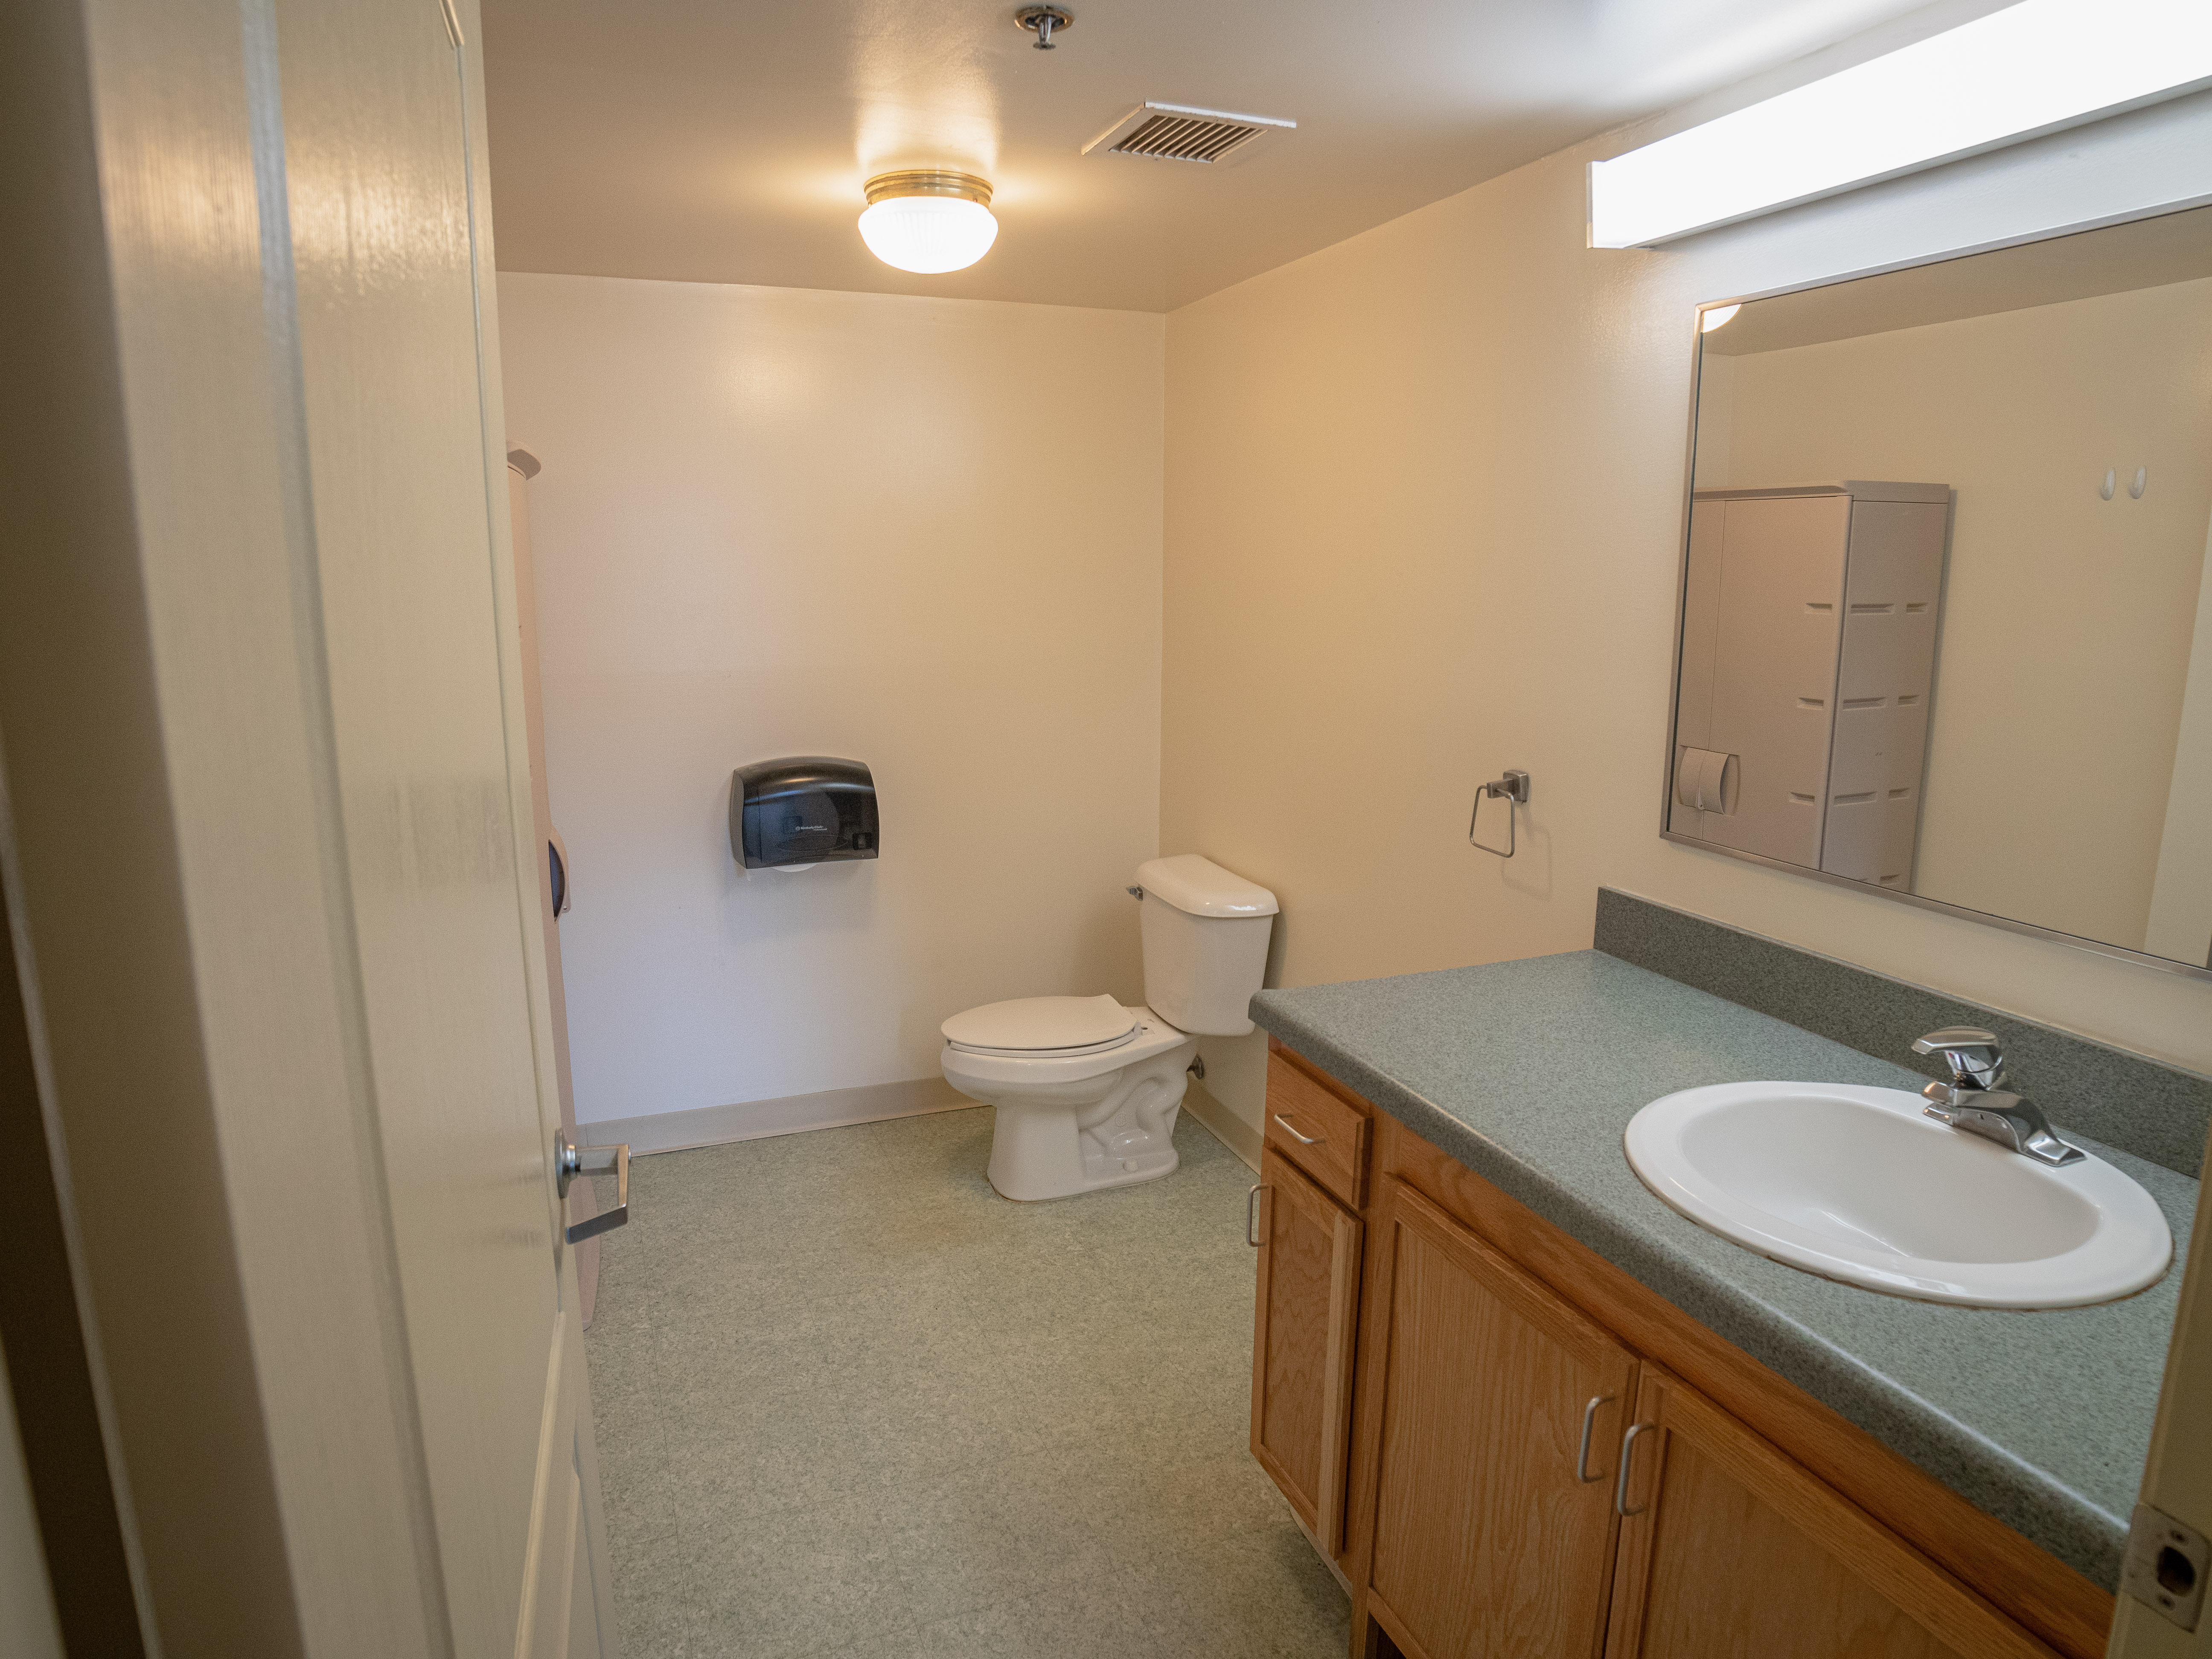 Picture of Campus Apartment bathroom.